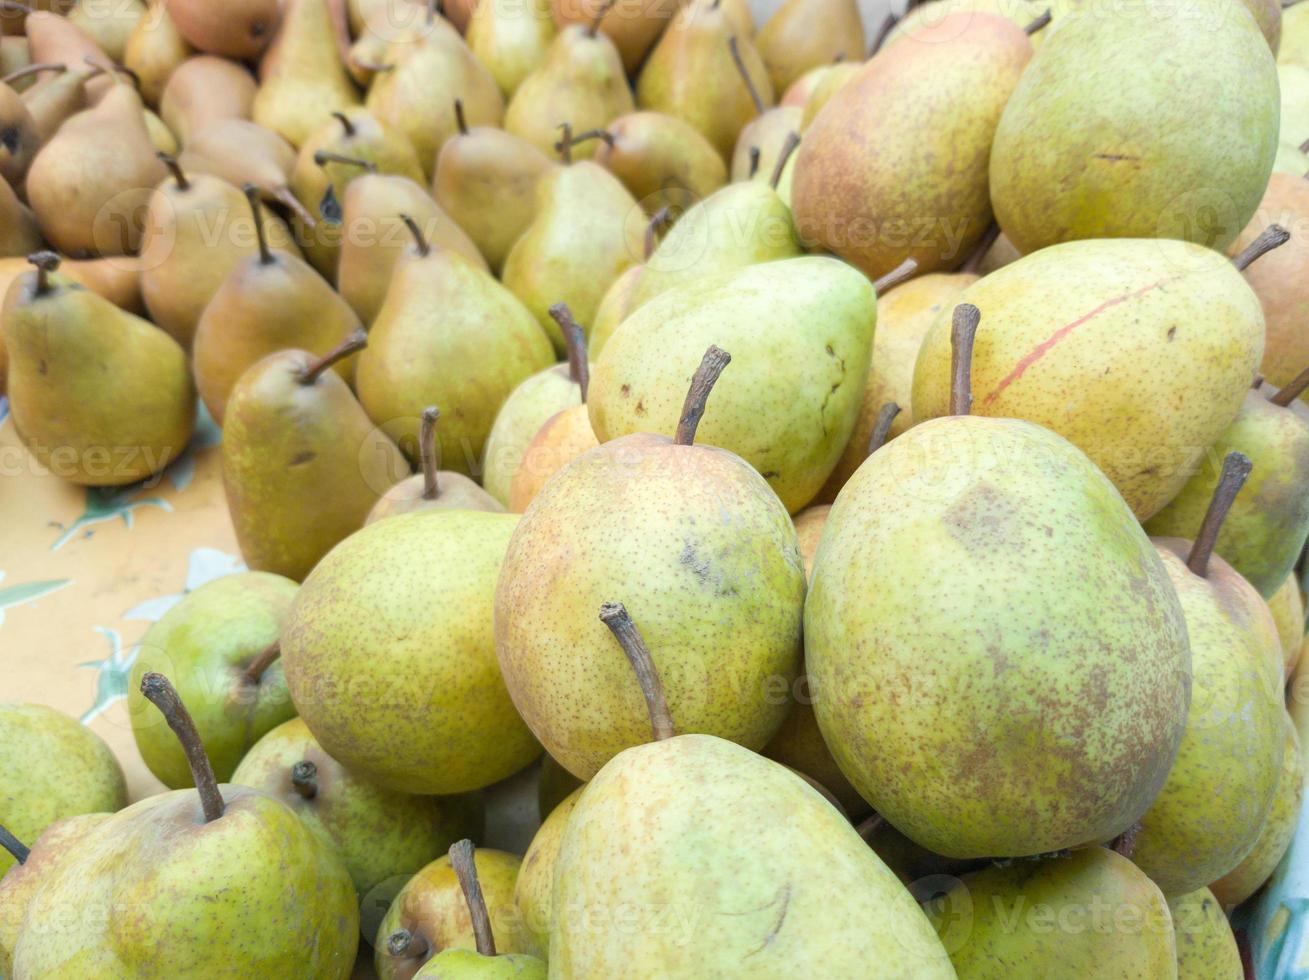 frutas frescas en cajas pequeñas a la venta en la finca, peras con tallos. peras en el mercado de agricultores, mercado de alimentos, puesto de frutas foto